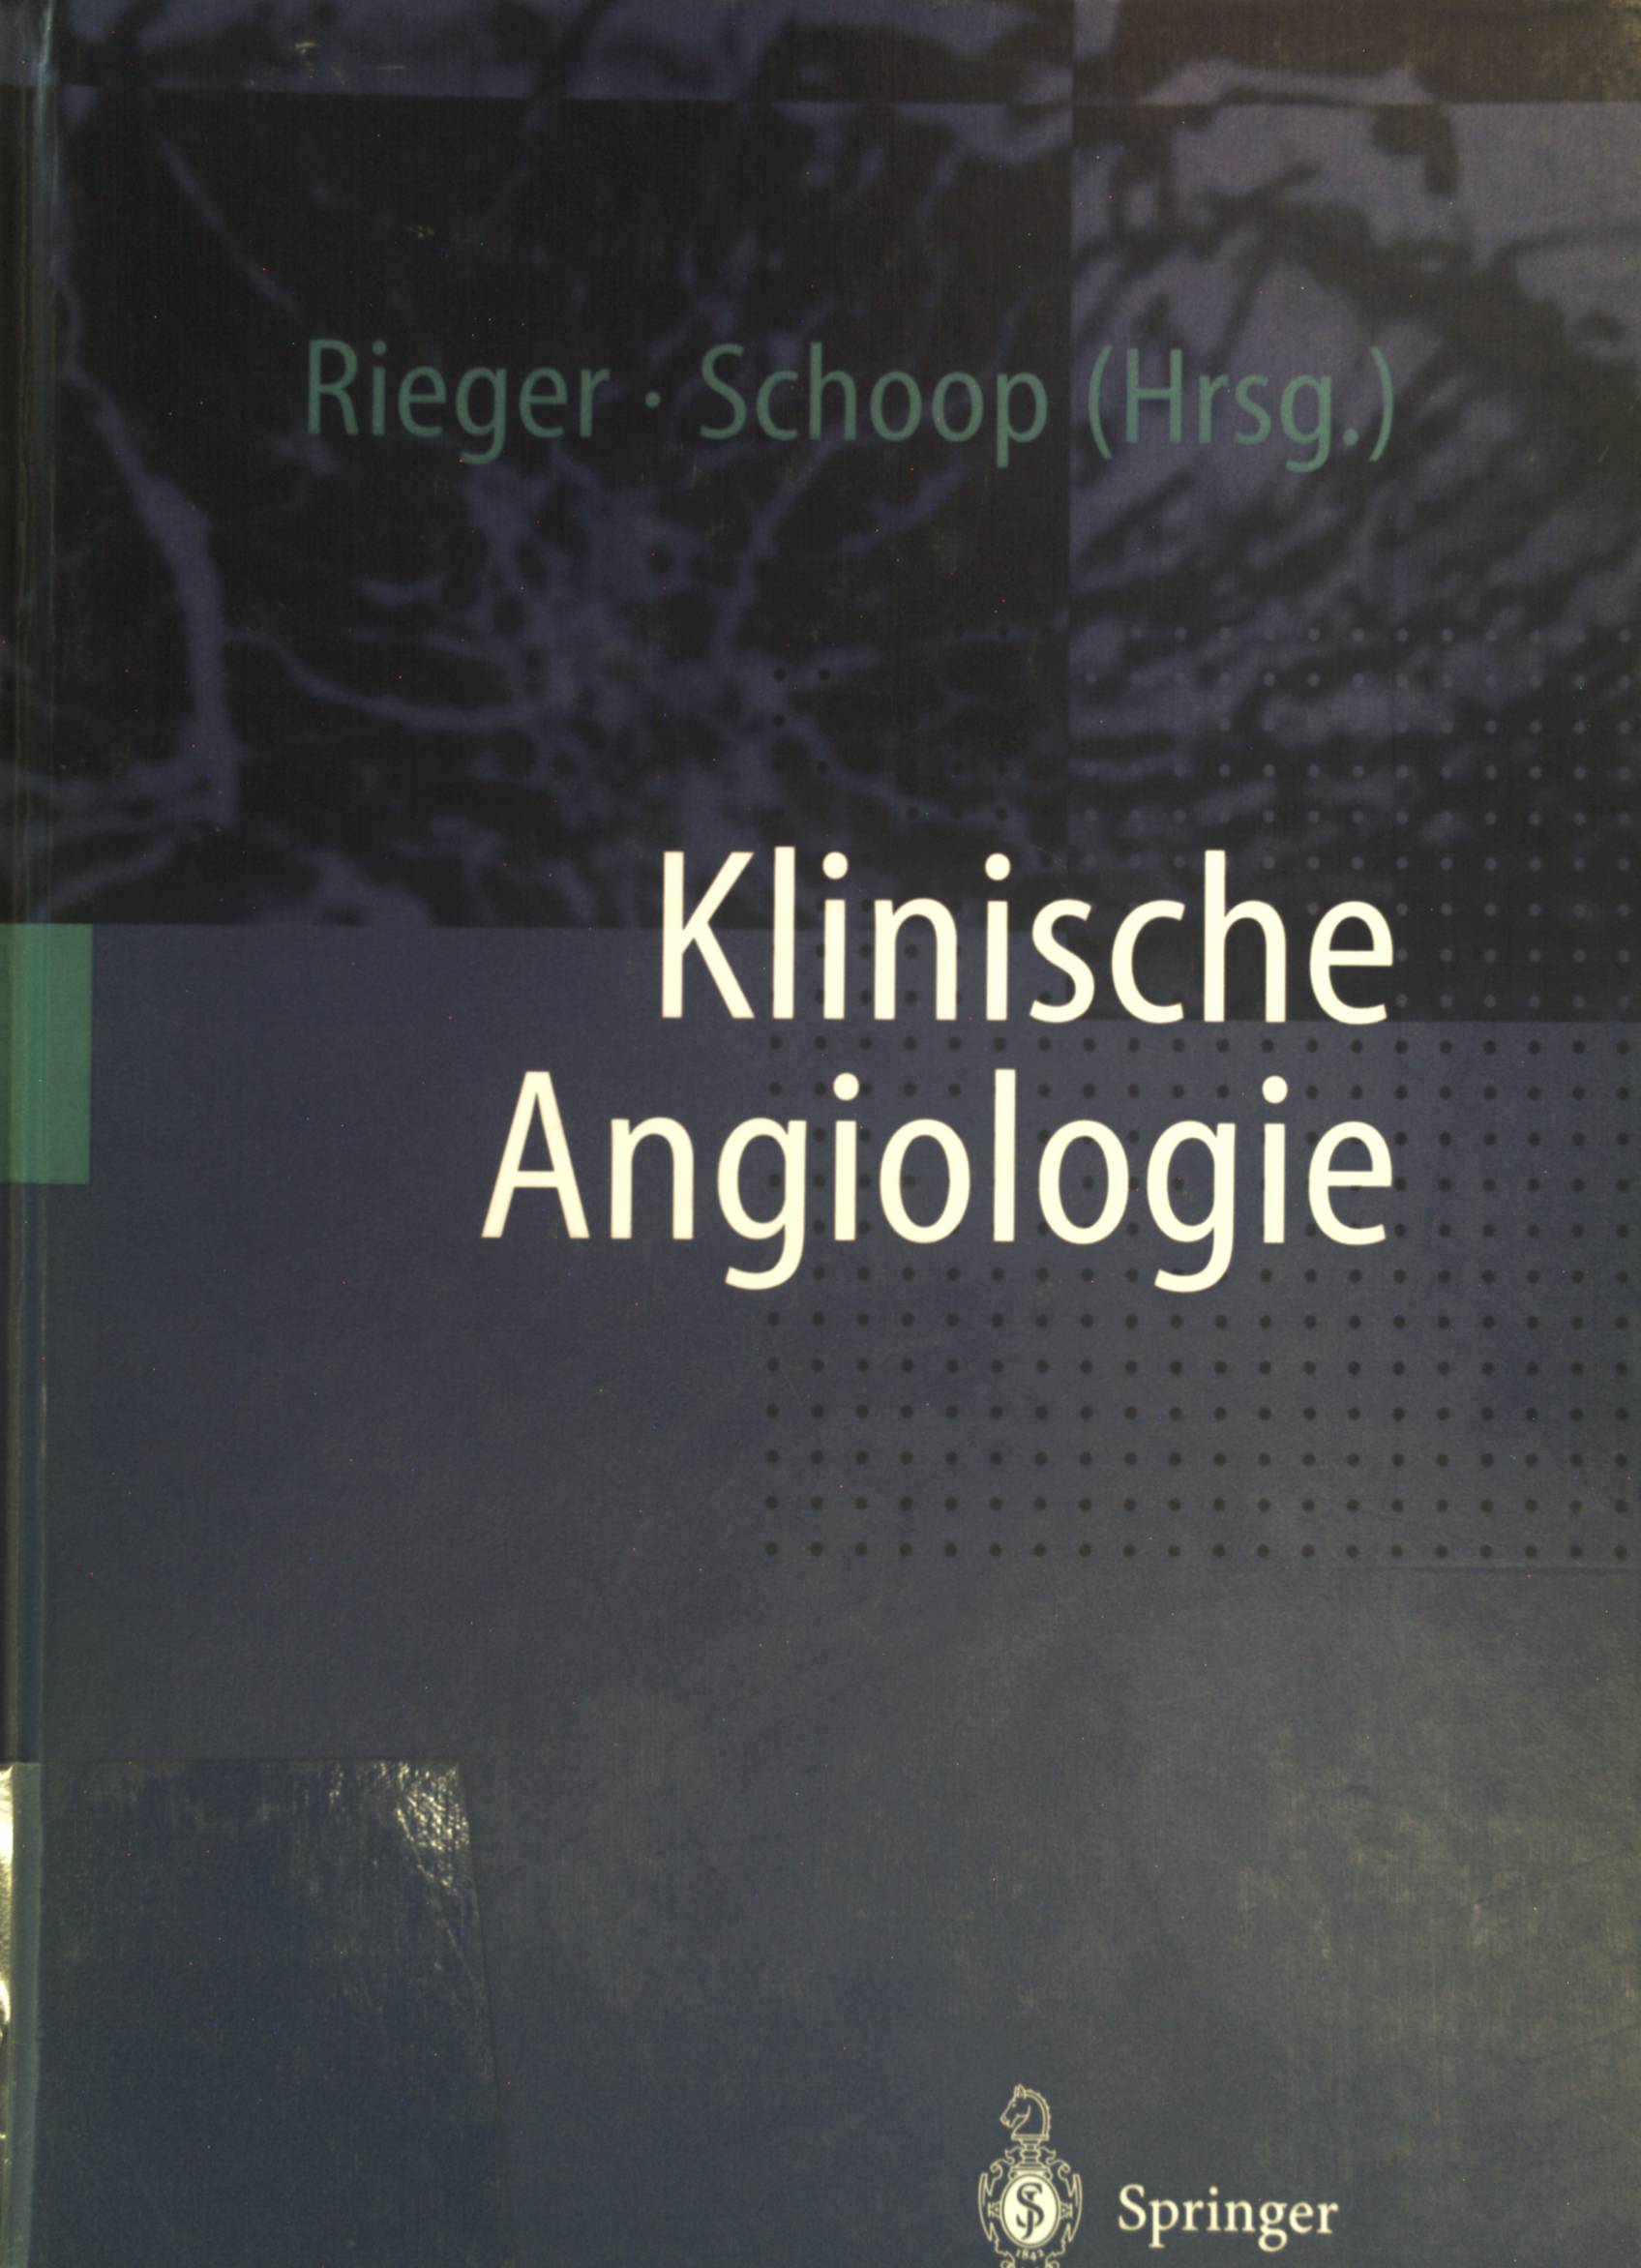 Klinische Angiologie. - Rieger, Horst und Andreas L. Strauss